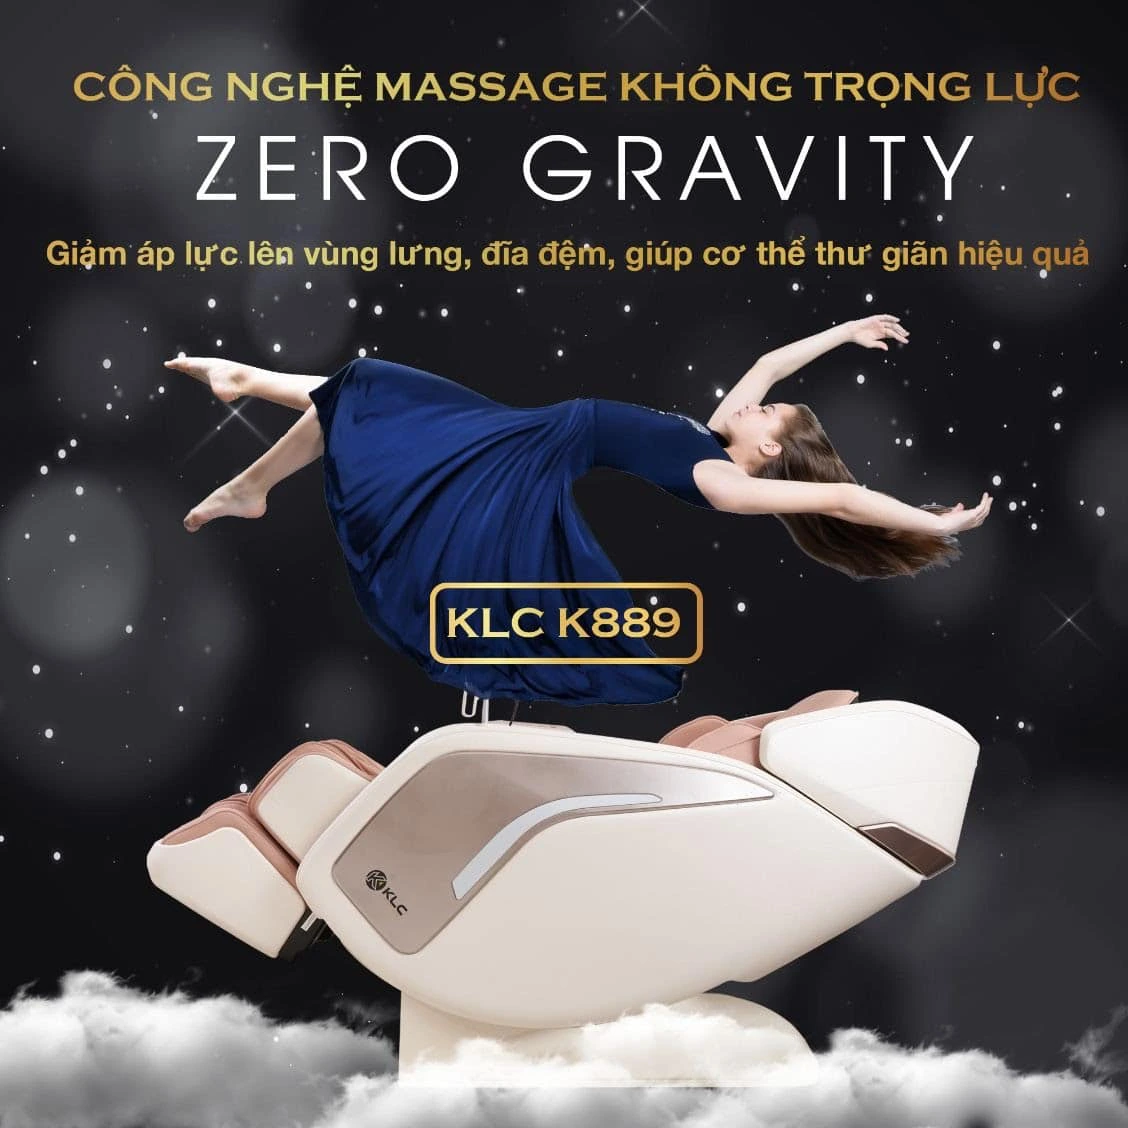 Chế độ không trọng lực của Ghế Massage KLC K889